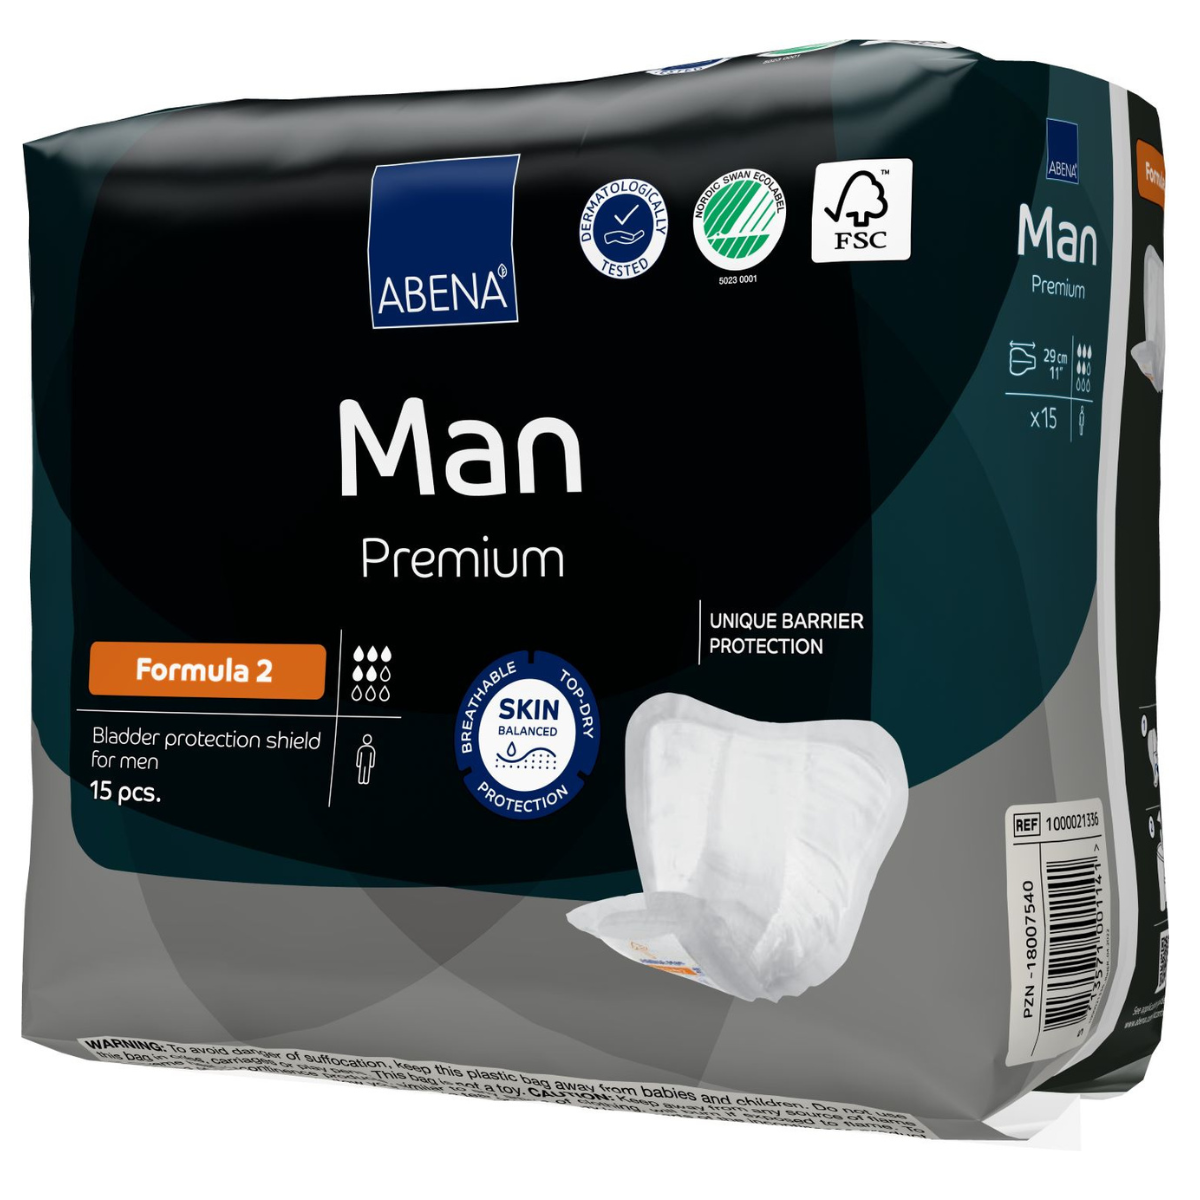 SAMPLE | Abena Man pads for men range